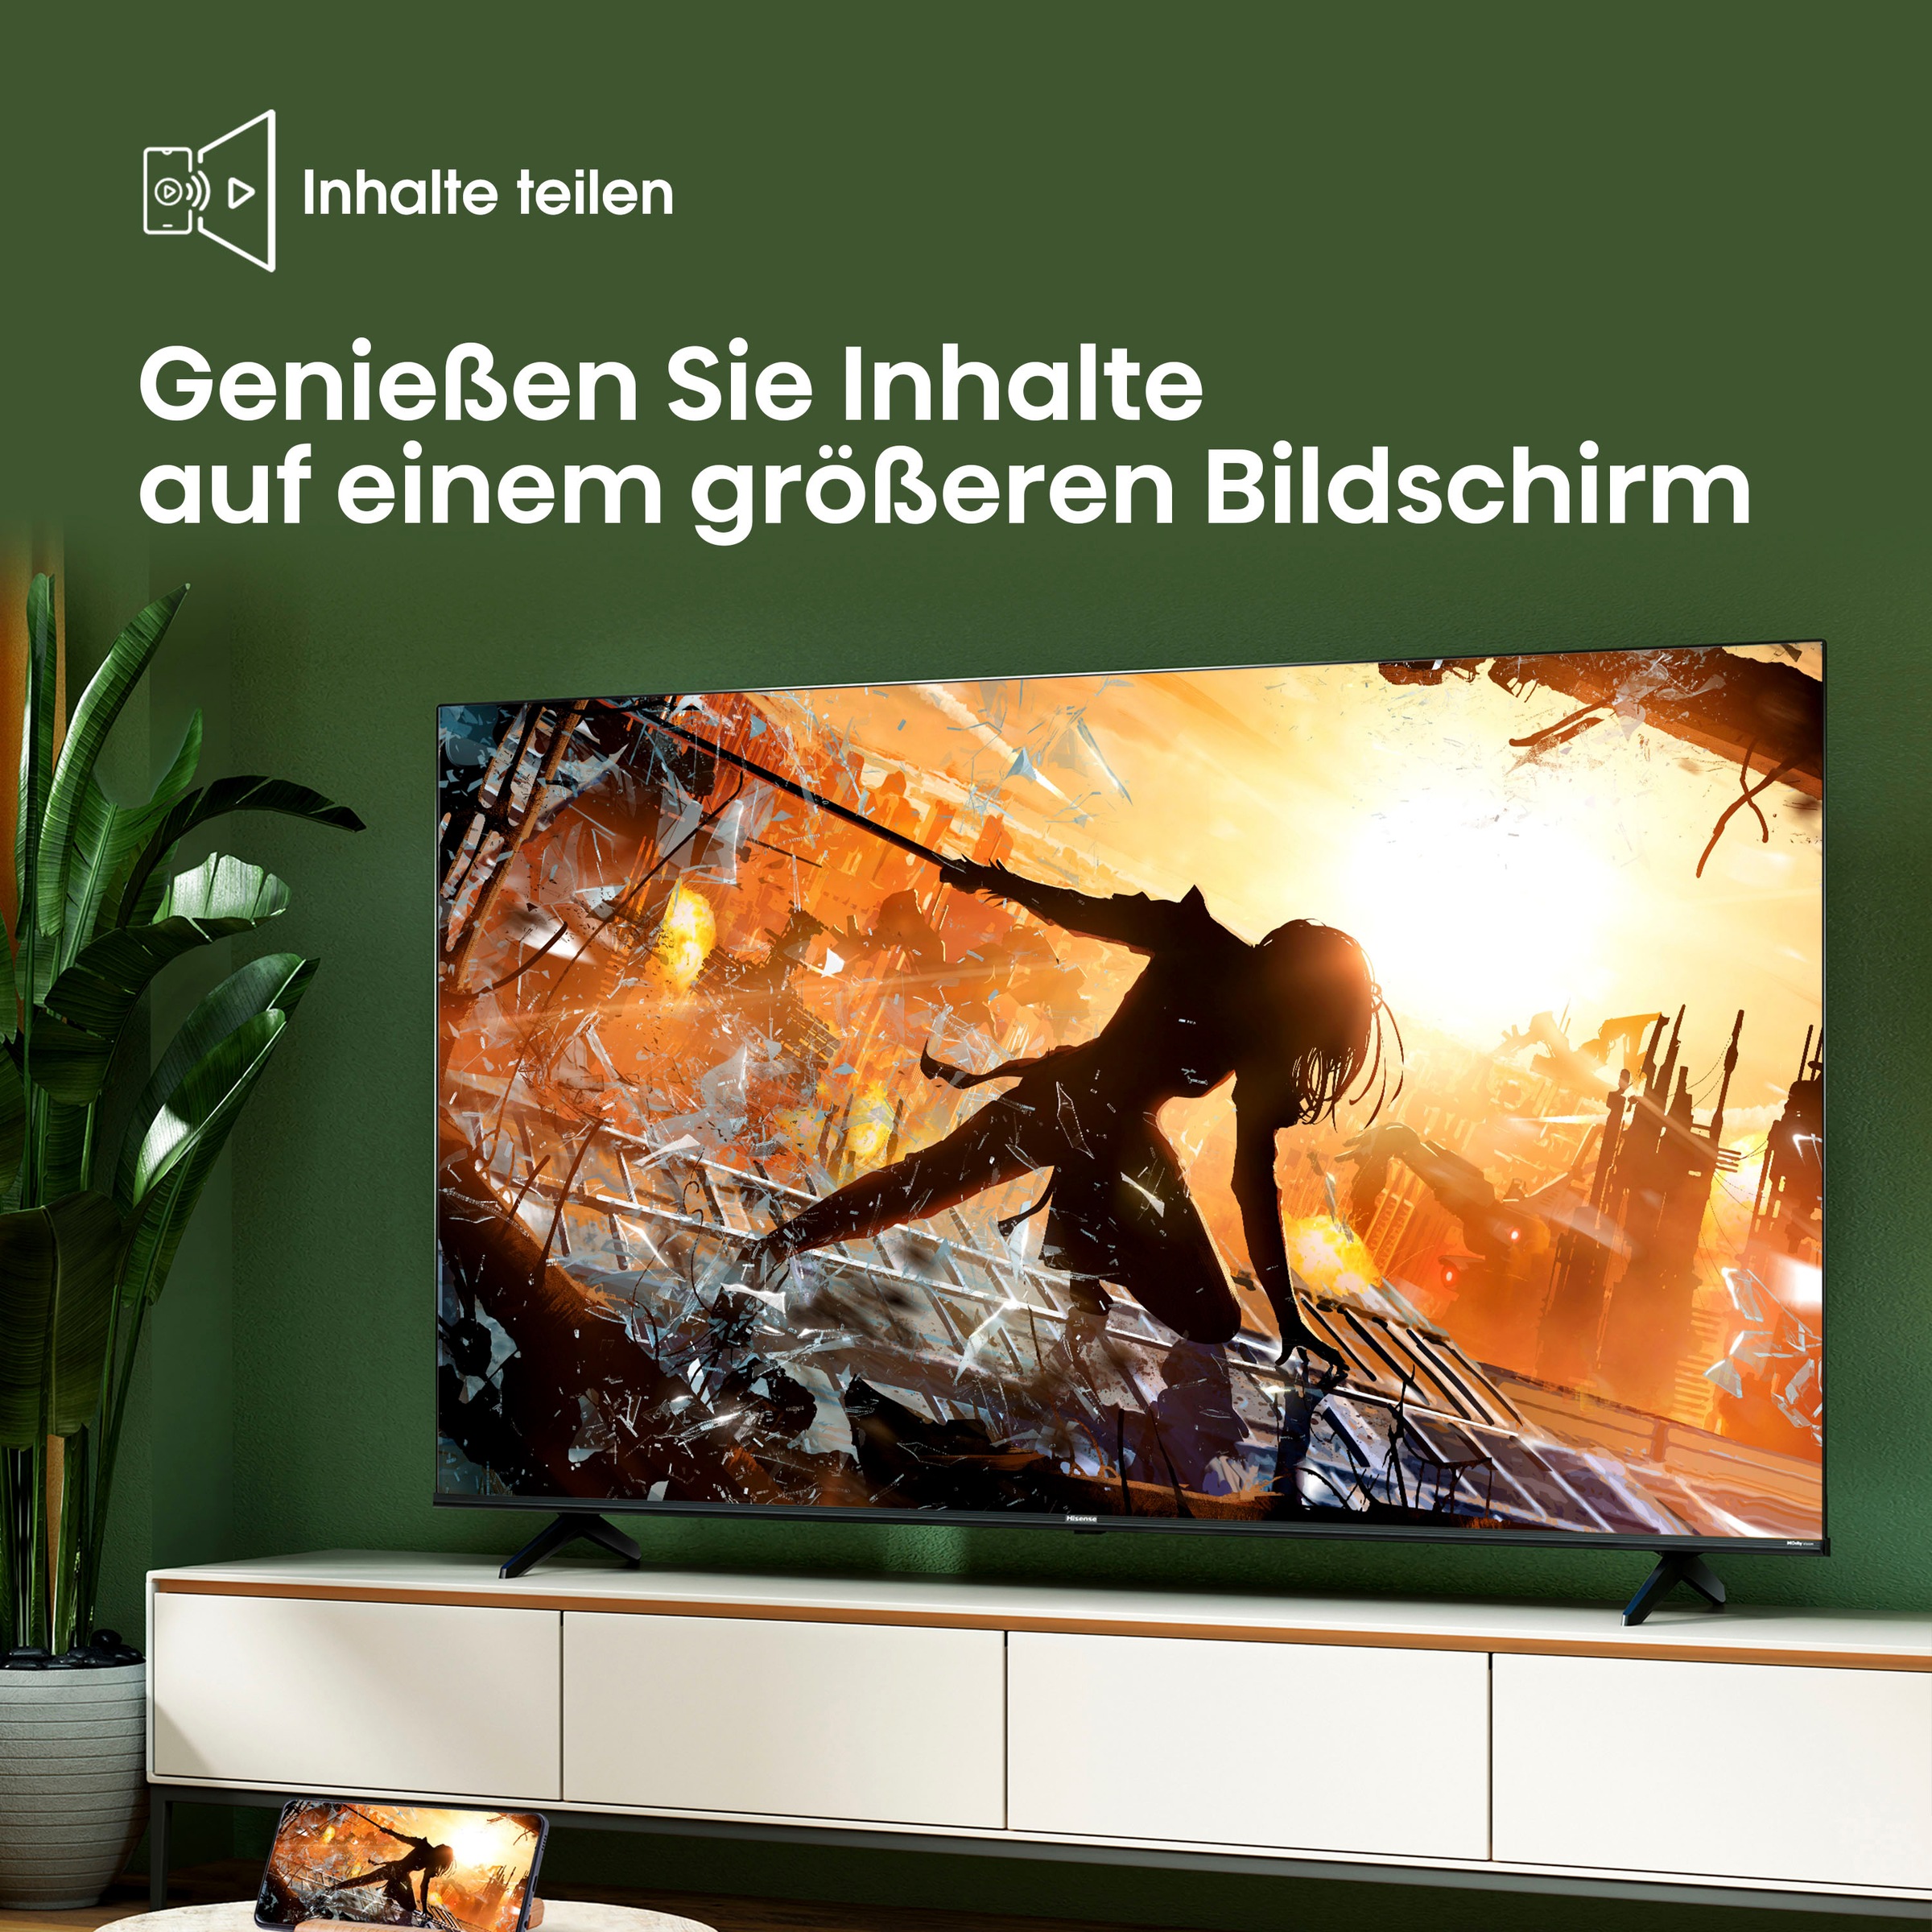 Hisense LED-Fernseher, 108 cm/43 Zoll, 4K Ultra HD, Smart-TV, Dolby Vision, Triple Tuner DVB-C/S/S2/T/T2